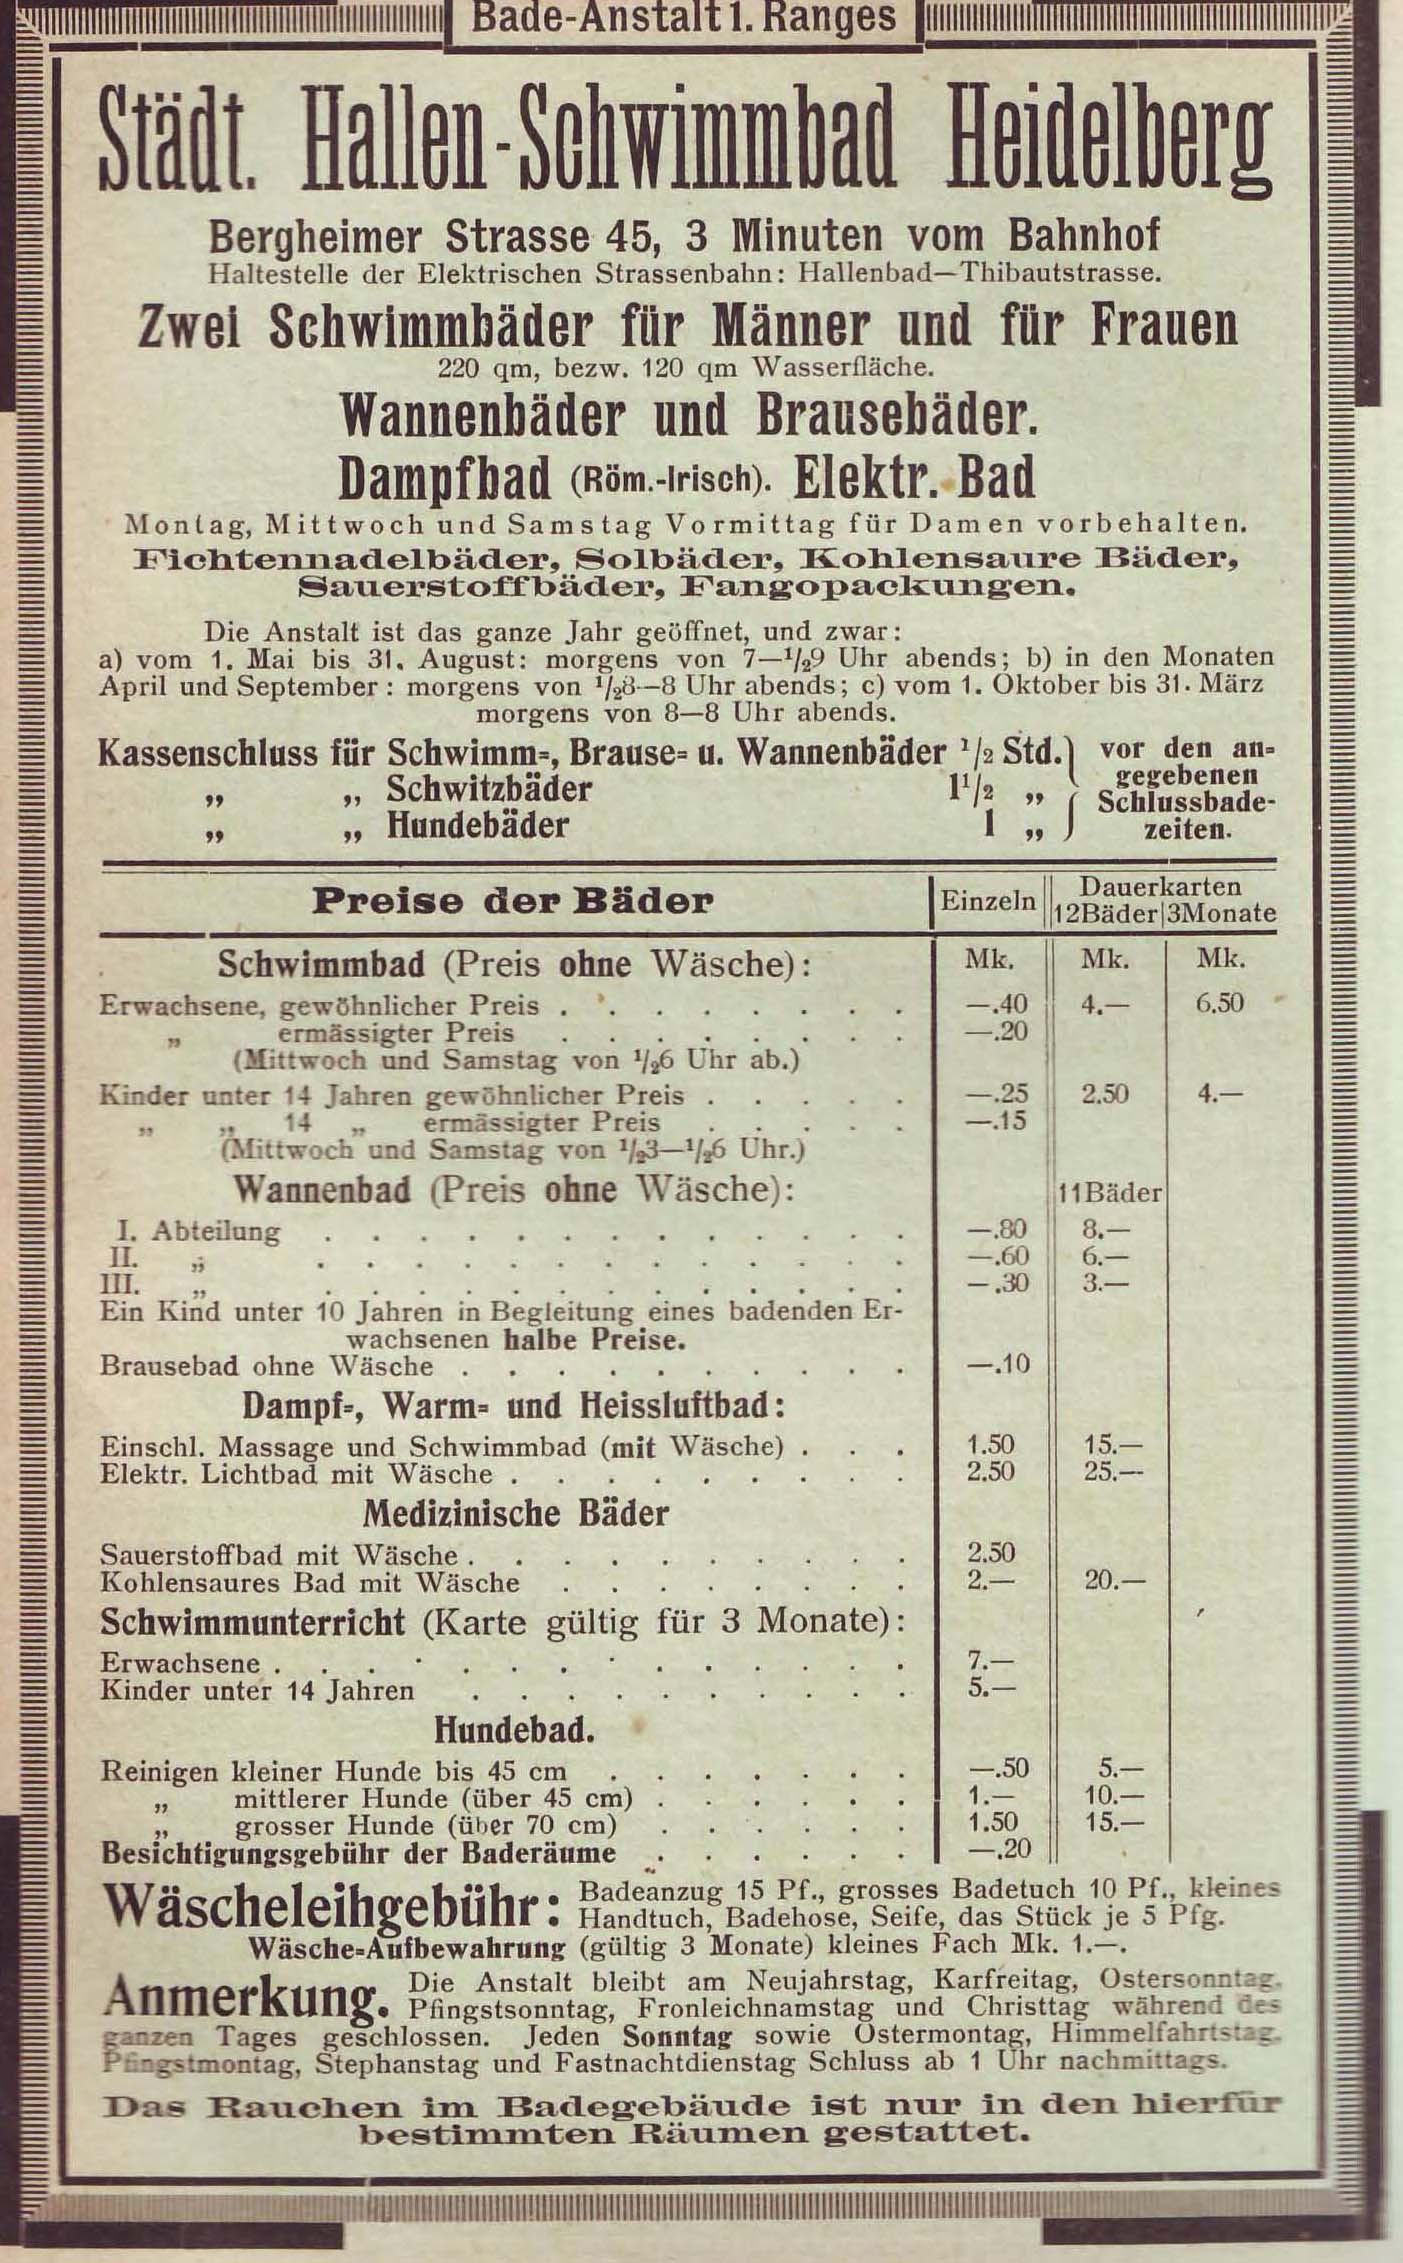 Städtisches Hallen-Schwimmbad 1916